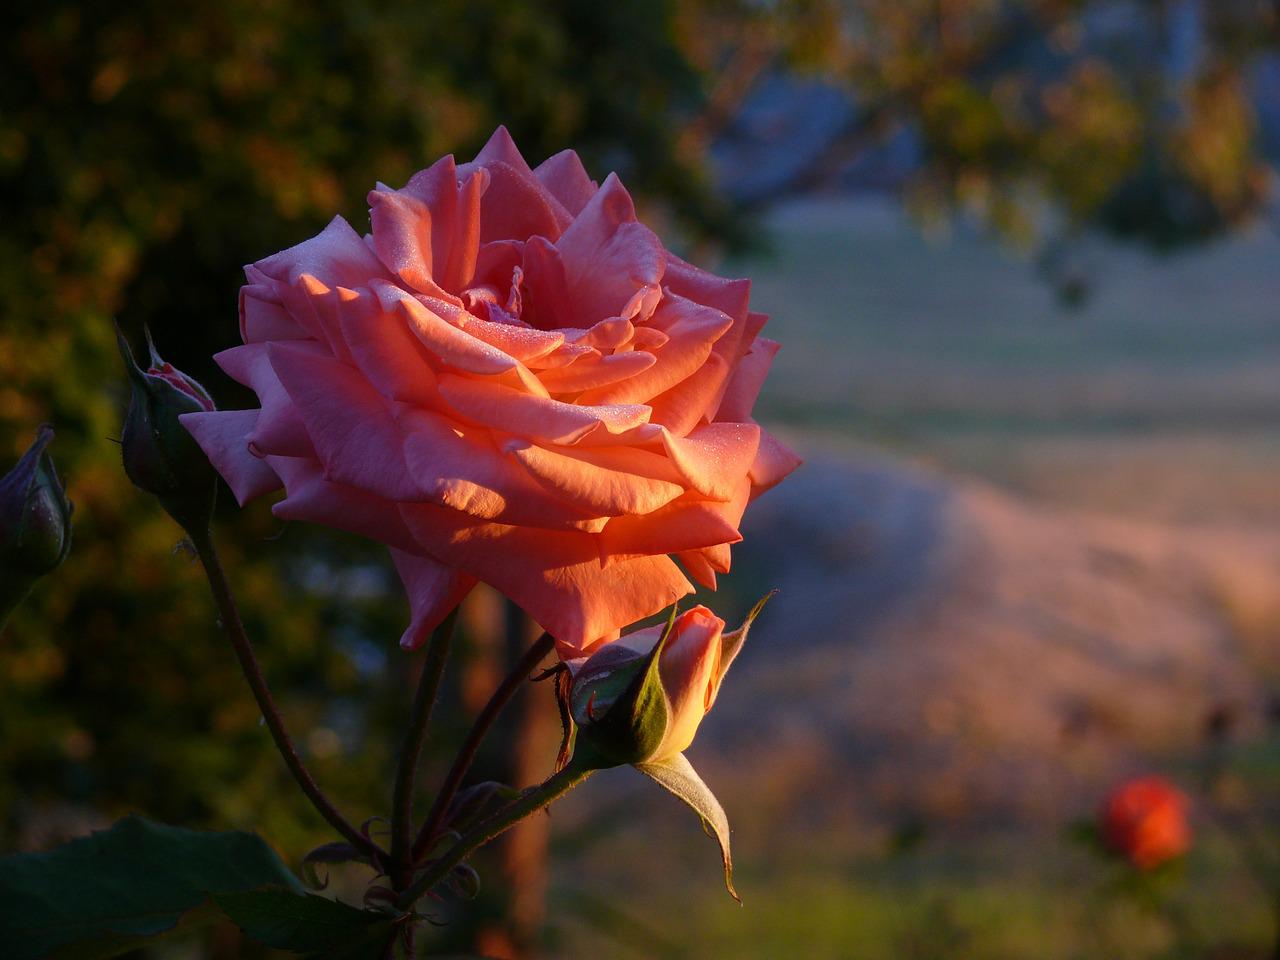 Как роза в капельках росы, Пусть будет счастье нежным, Как небо цвета бирюзы, Бескрайним и безбрежным  И будет жизнь по